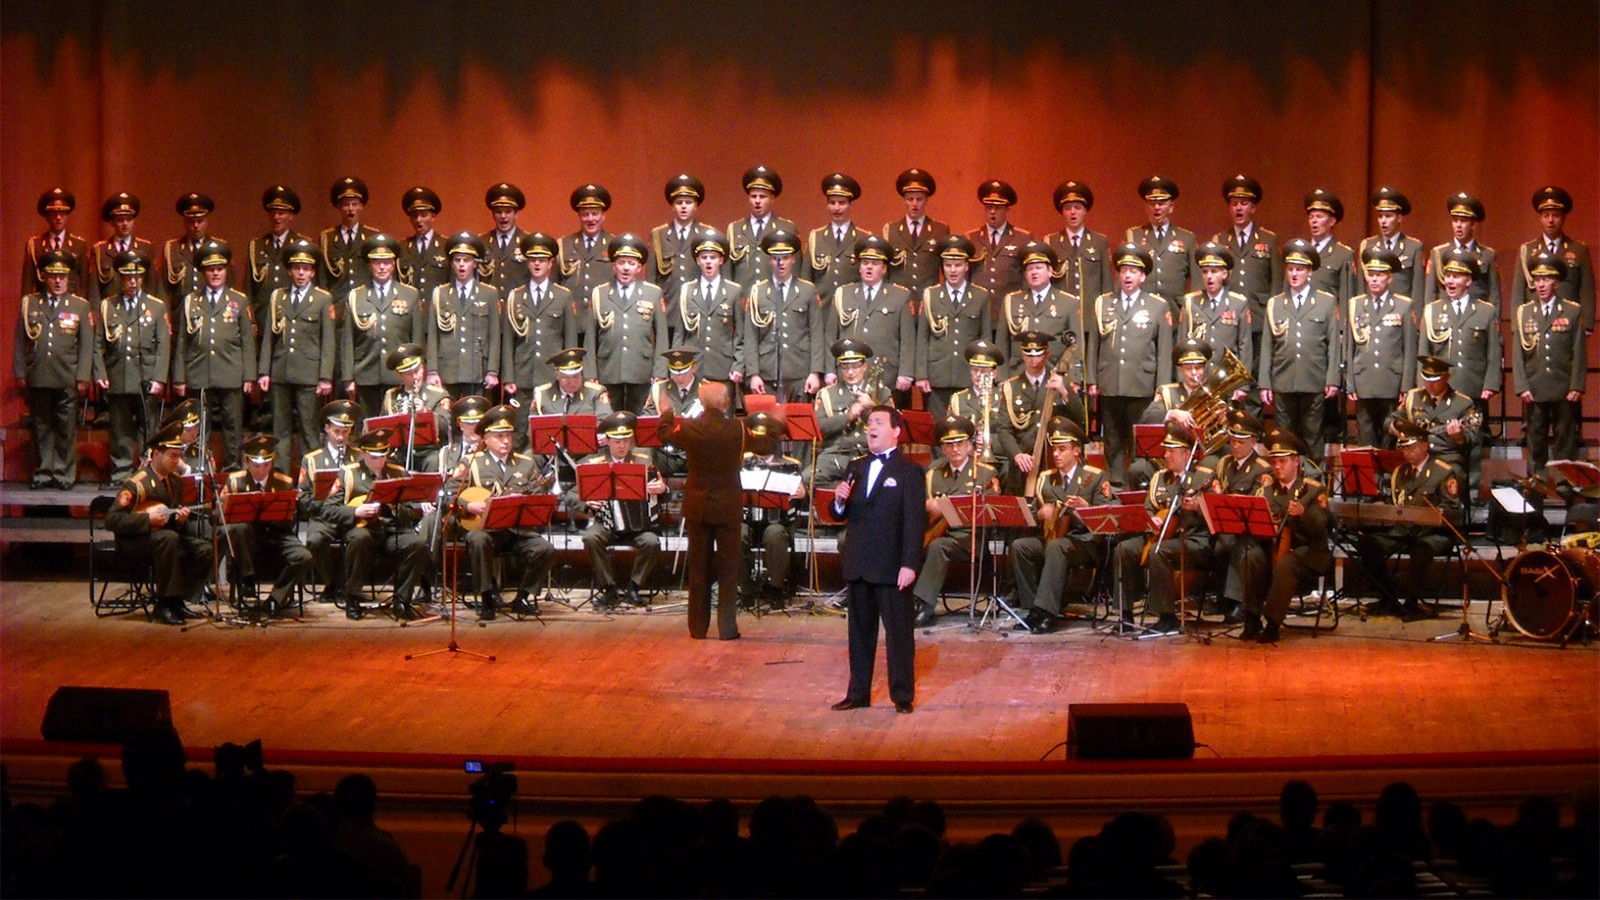 מקהלת הצבא האדום בהופעה בוורשה, 2009 (תמונה מתוך ויקימדיה)